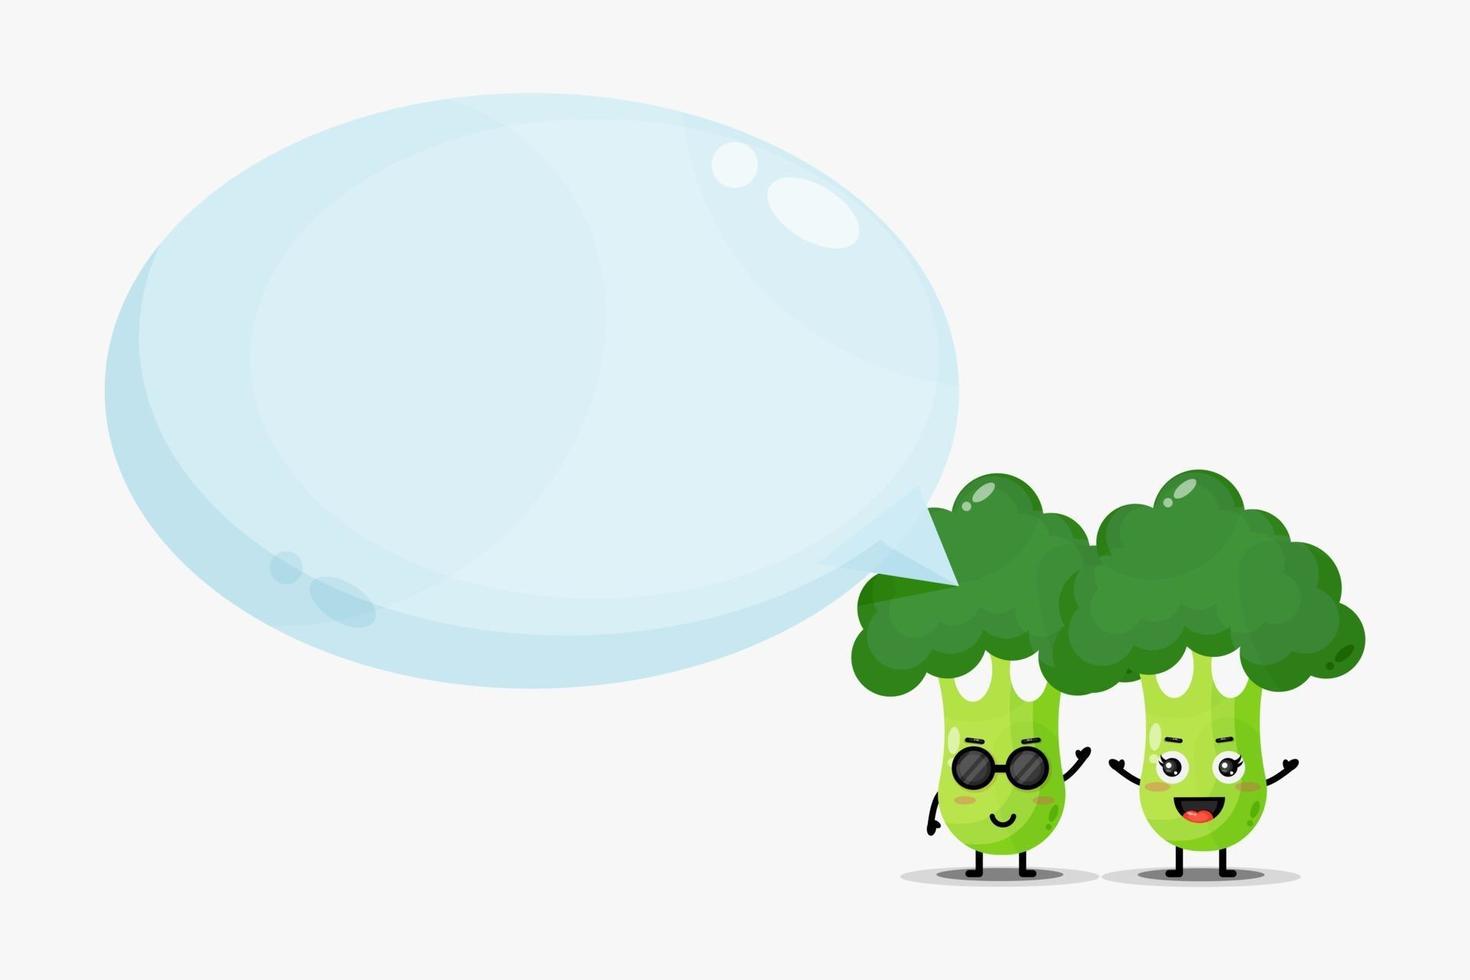 Cute broccoli mascot with bubble speech vector